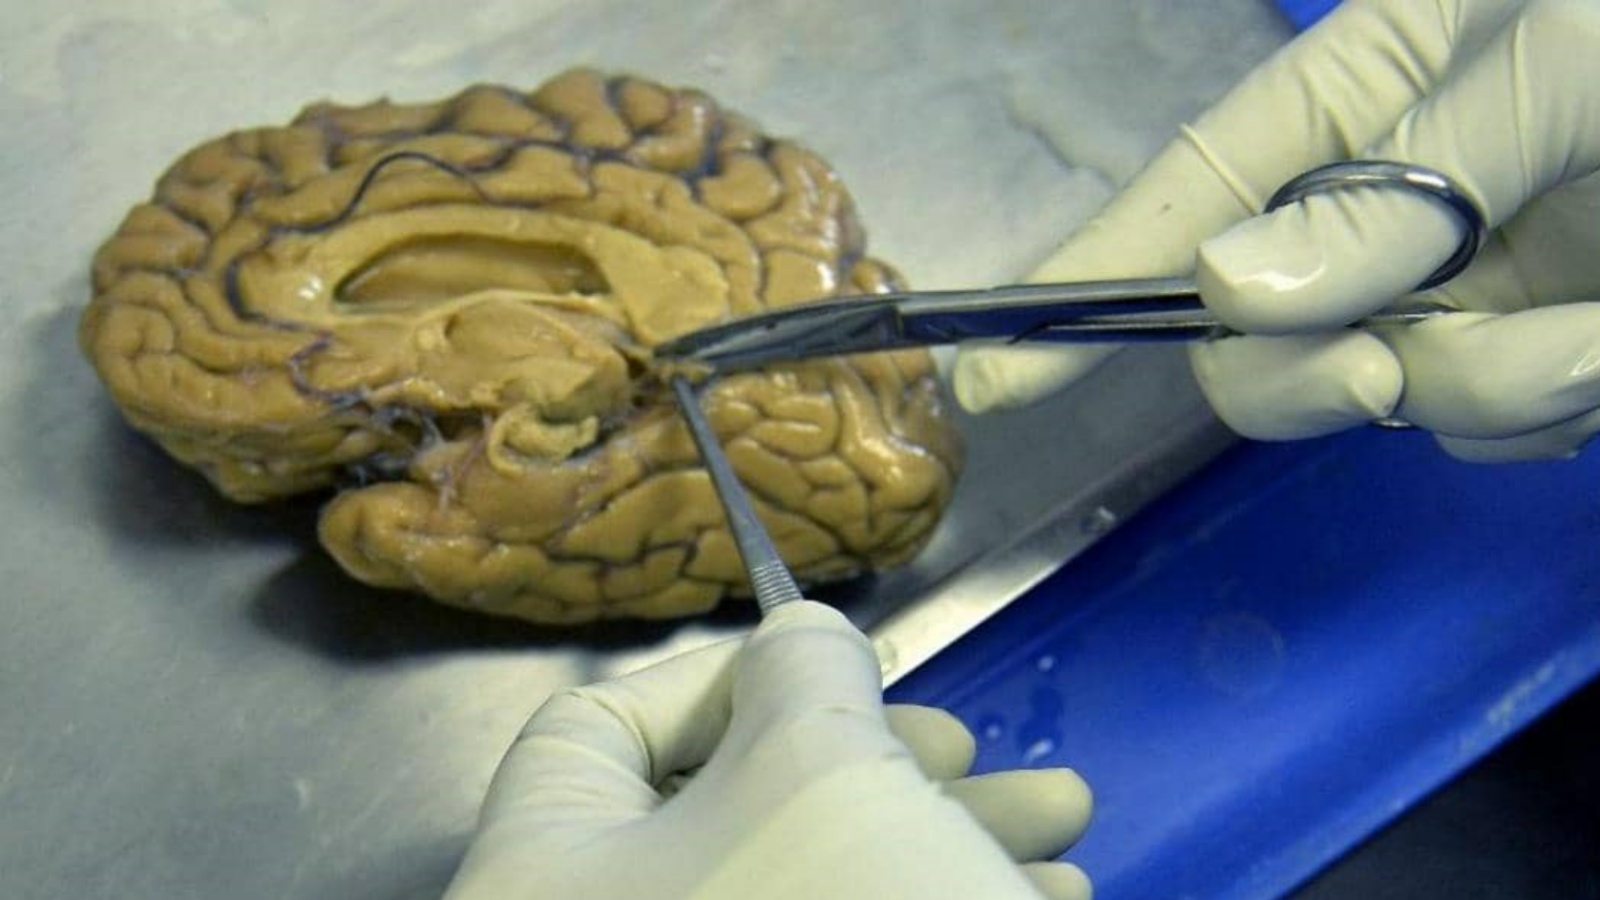 عملية تشريح الدماغ في المختبر. (أرشيفية)